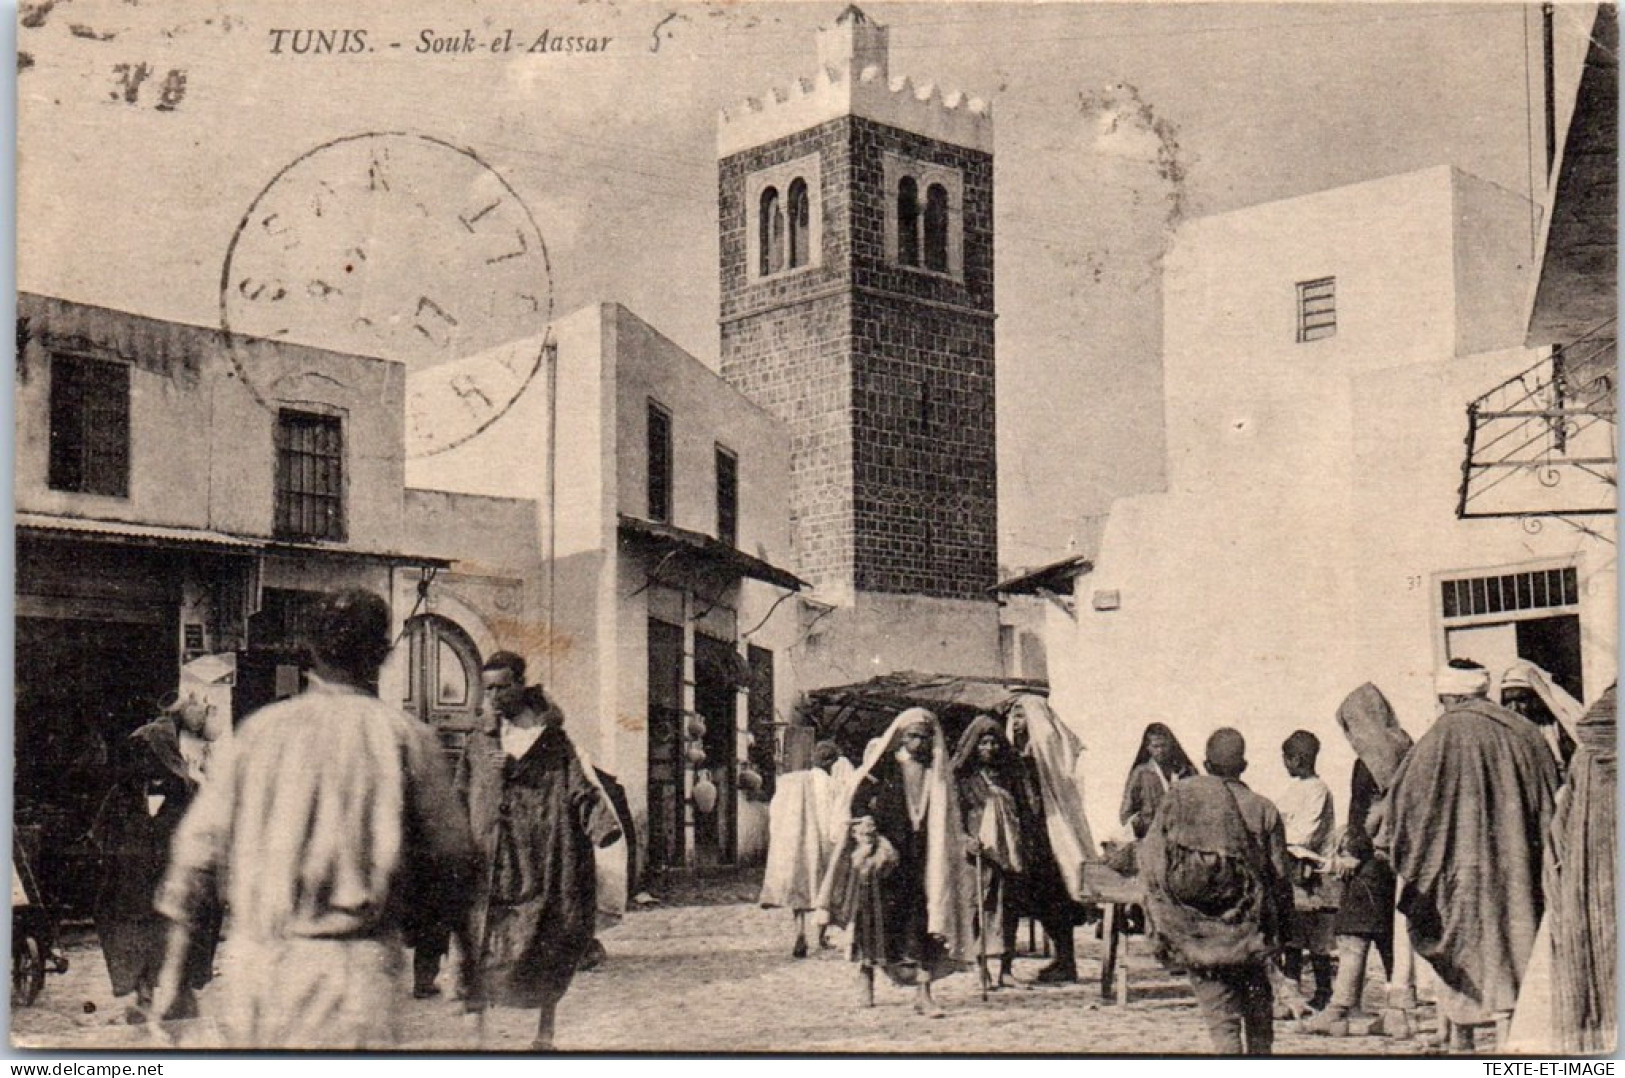 TUNISIE - TUNIS - Souk El Aassar - Tunisia